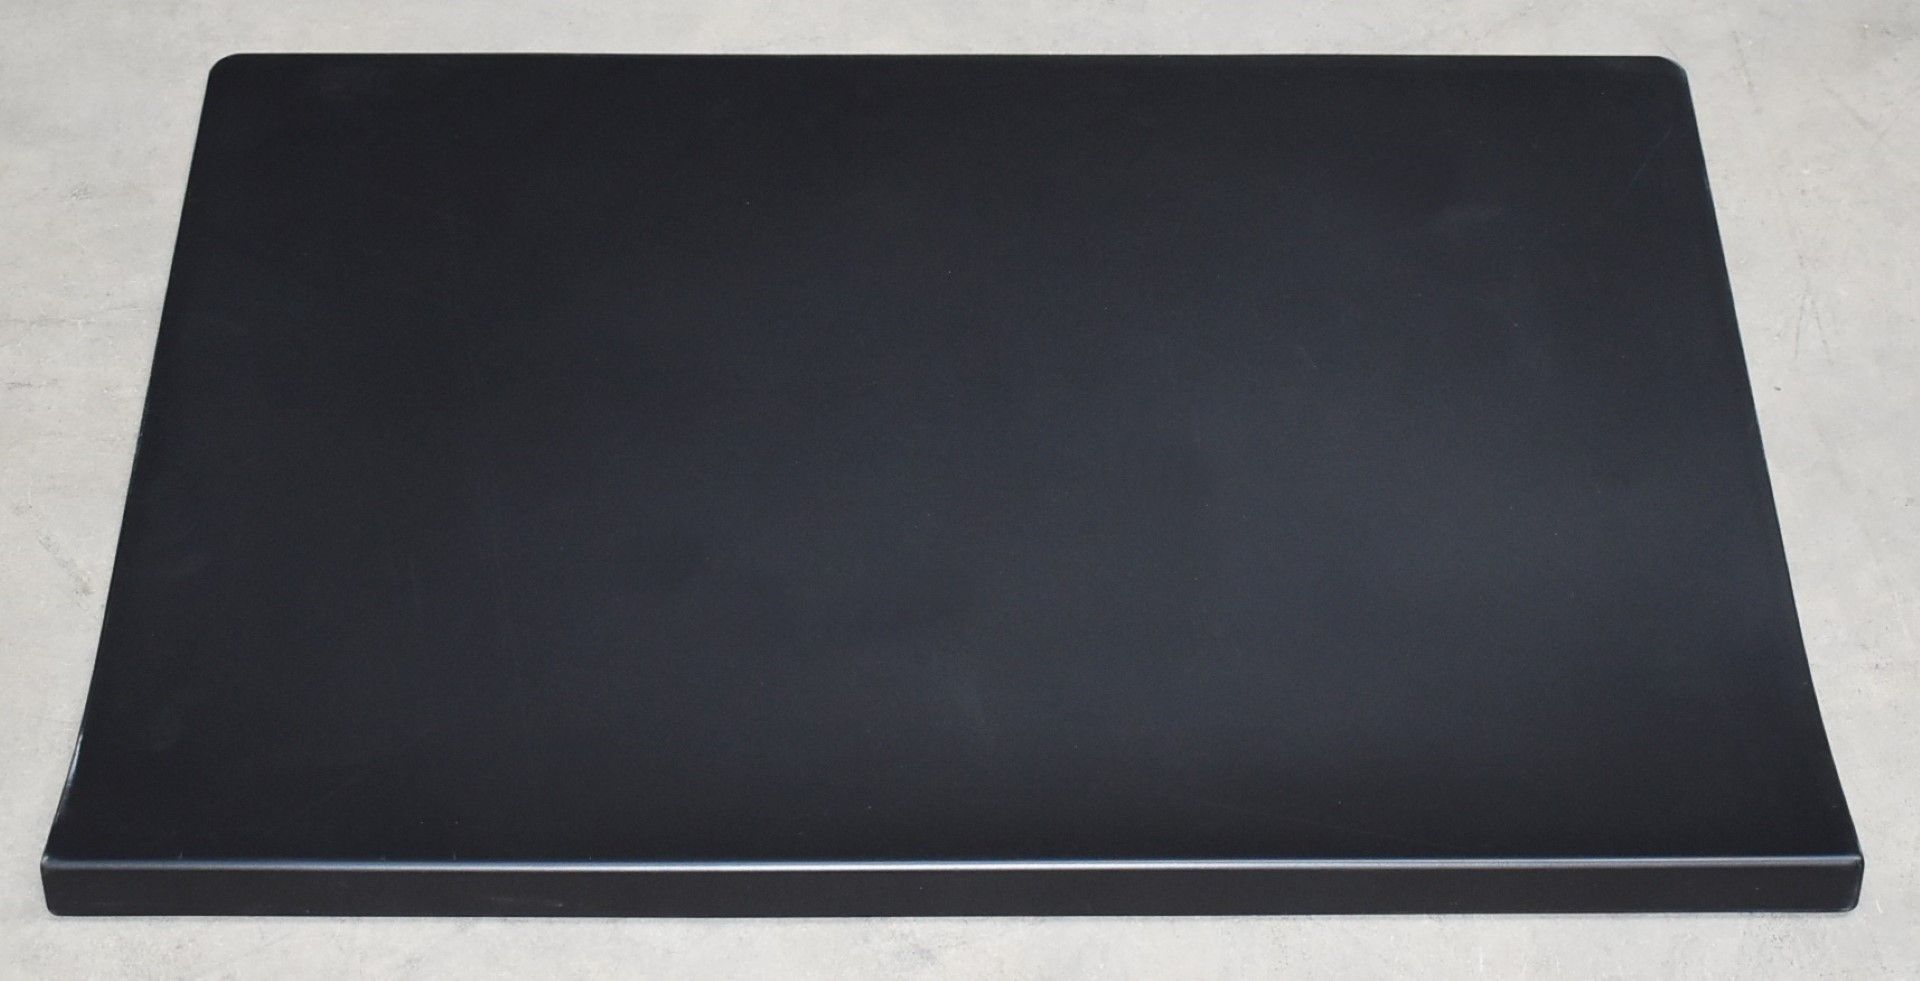 1 x Vitra Joyn Desk Pad in Black - Designed by Ronan & Erwan Bouroullec - Size: 70 x 50 cms - RRP £ - Image 2 of 4